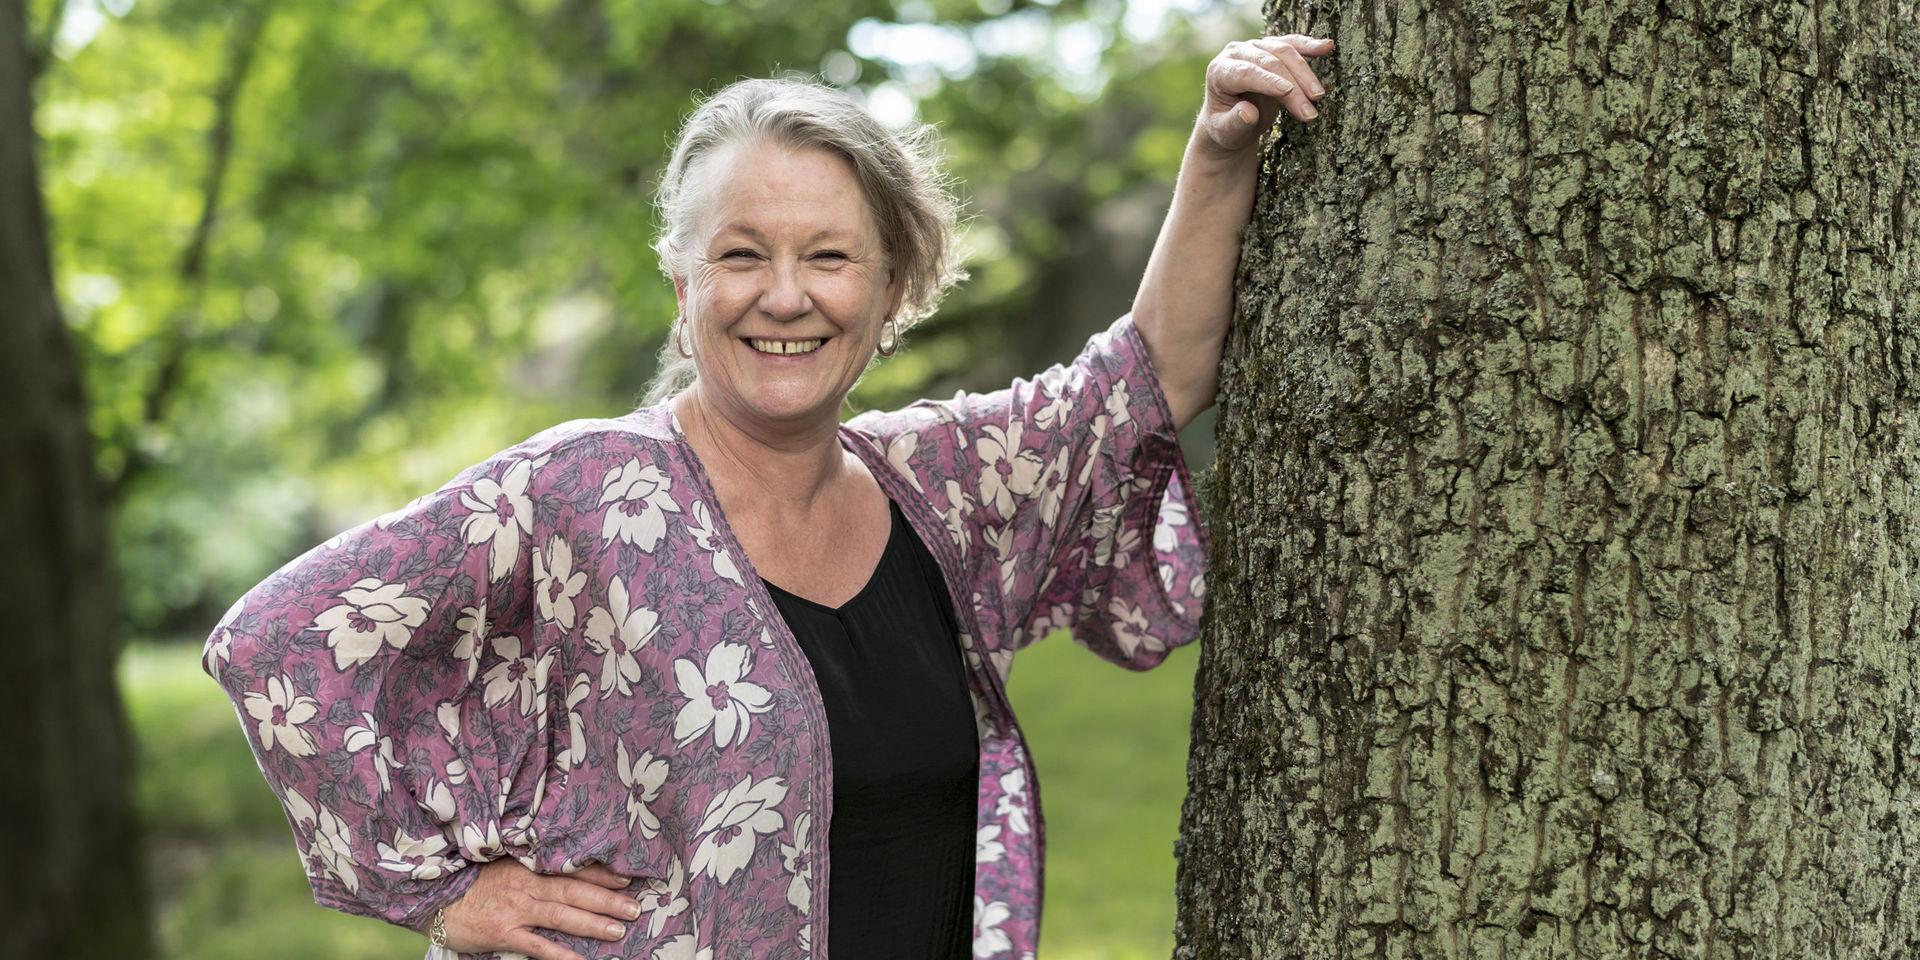 Sedan Guldbaggen för bästa kvinnliga biroll 2014 har jobben strömmat in för Anna Bjelkerud. &apos;Det är helt fantastiskt att vara 55-plussare och göra en andra karriär&apos;, säger hon inför sin 60-årsdag.